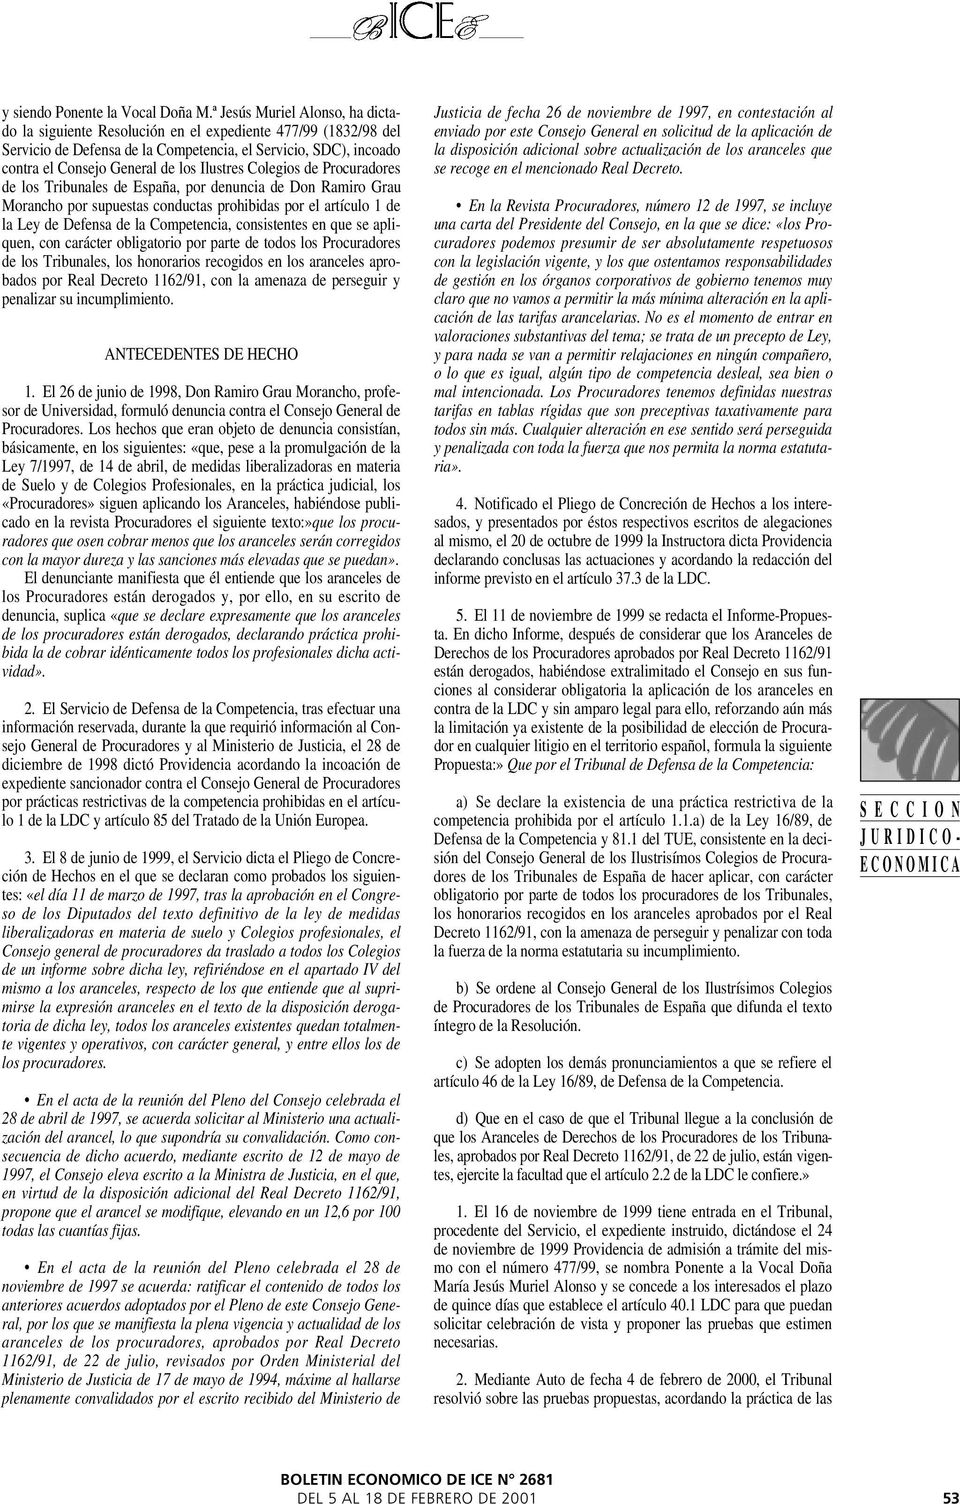 Ilustres Colegios de Procuradores de los Tribunales de España, por denuncia de Don Ramiro Grau Morancho por supuestas conductas prohibidas por el artículo 1 de la Ley de Defensa de la Competencia,